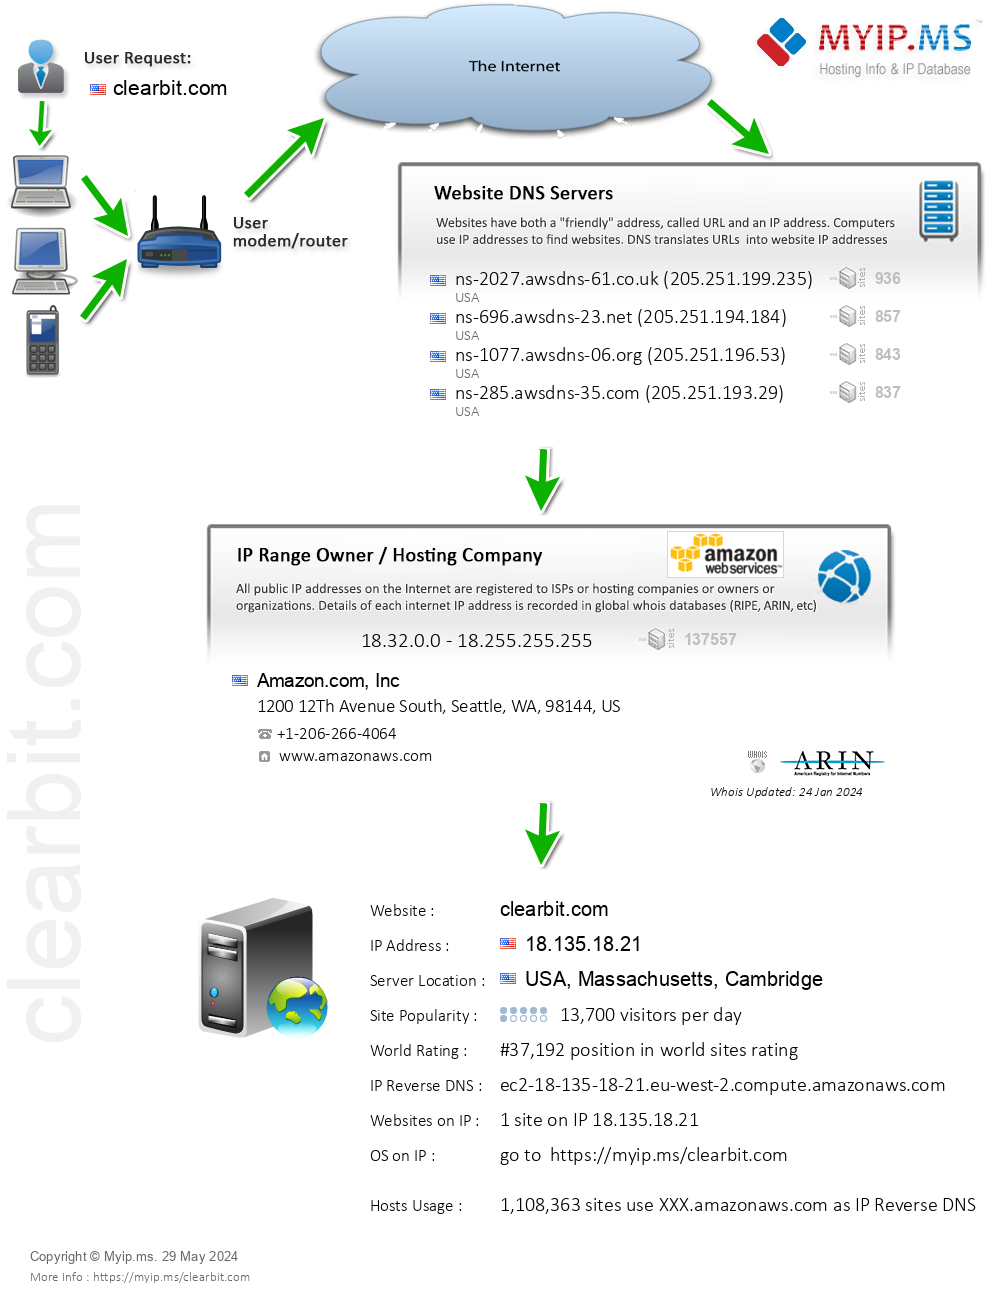 Clearbit.com - Website Hosting Visual IP Diagram